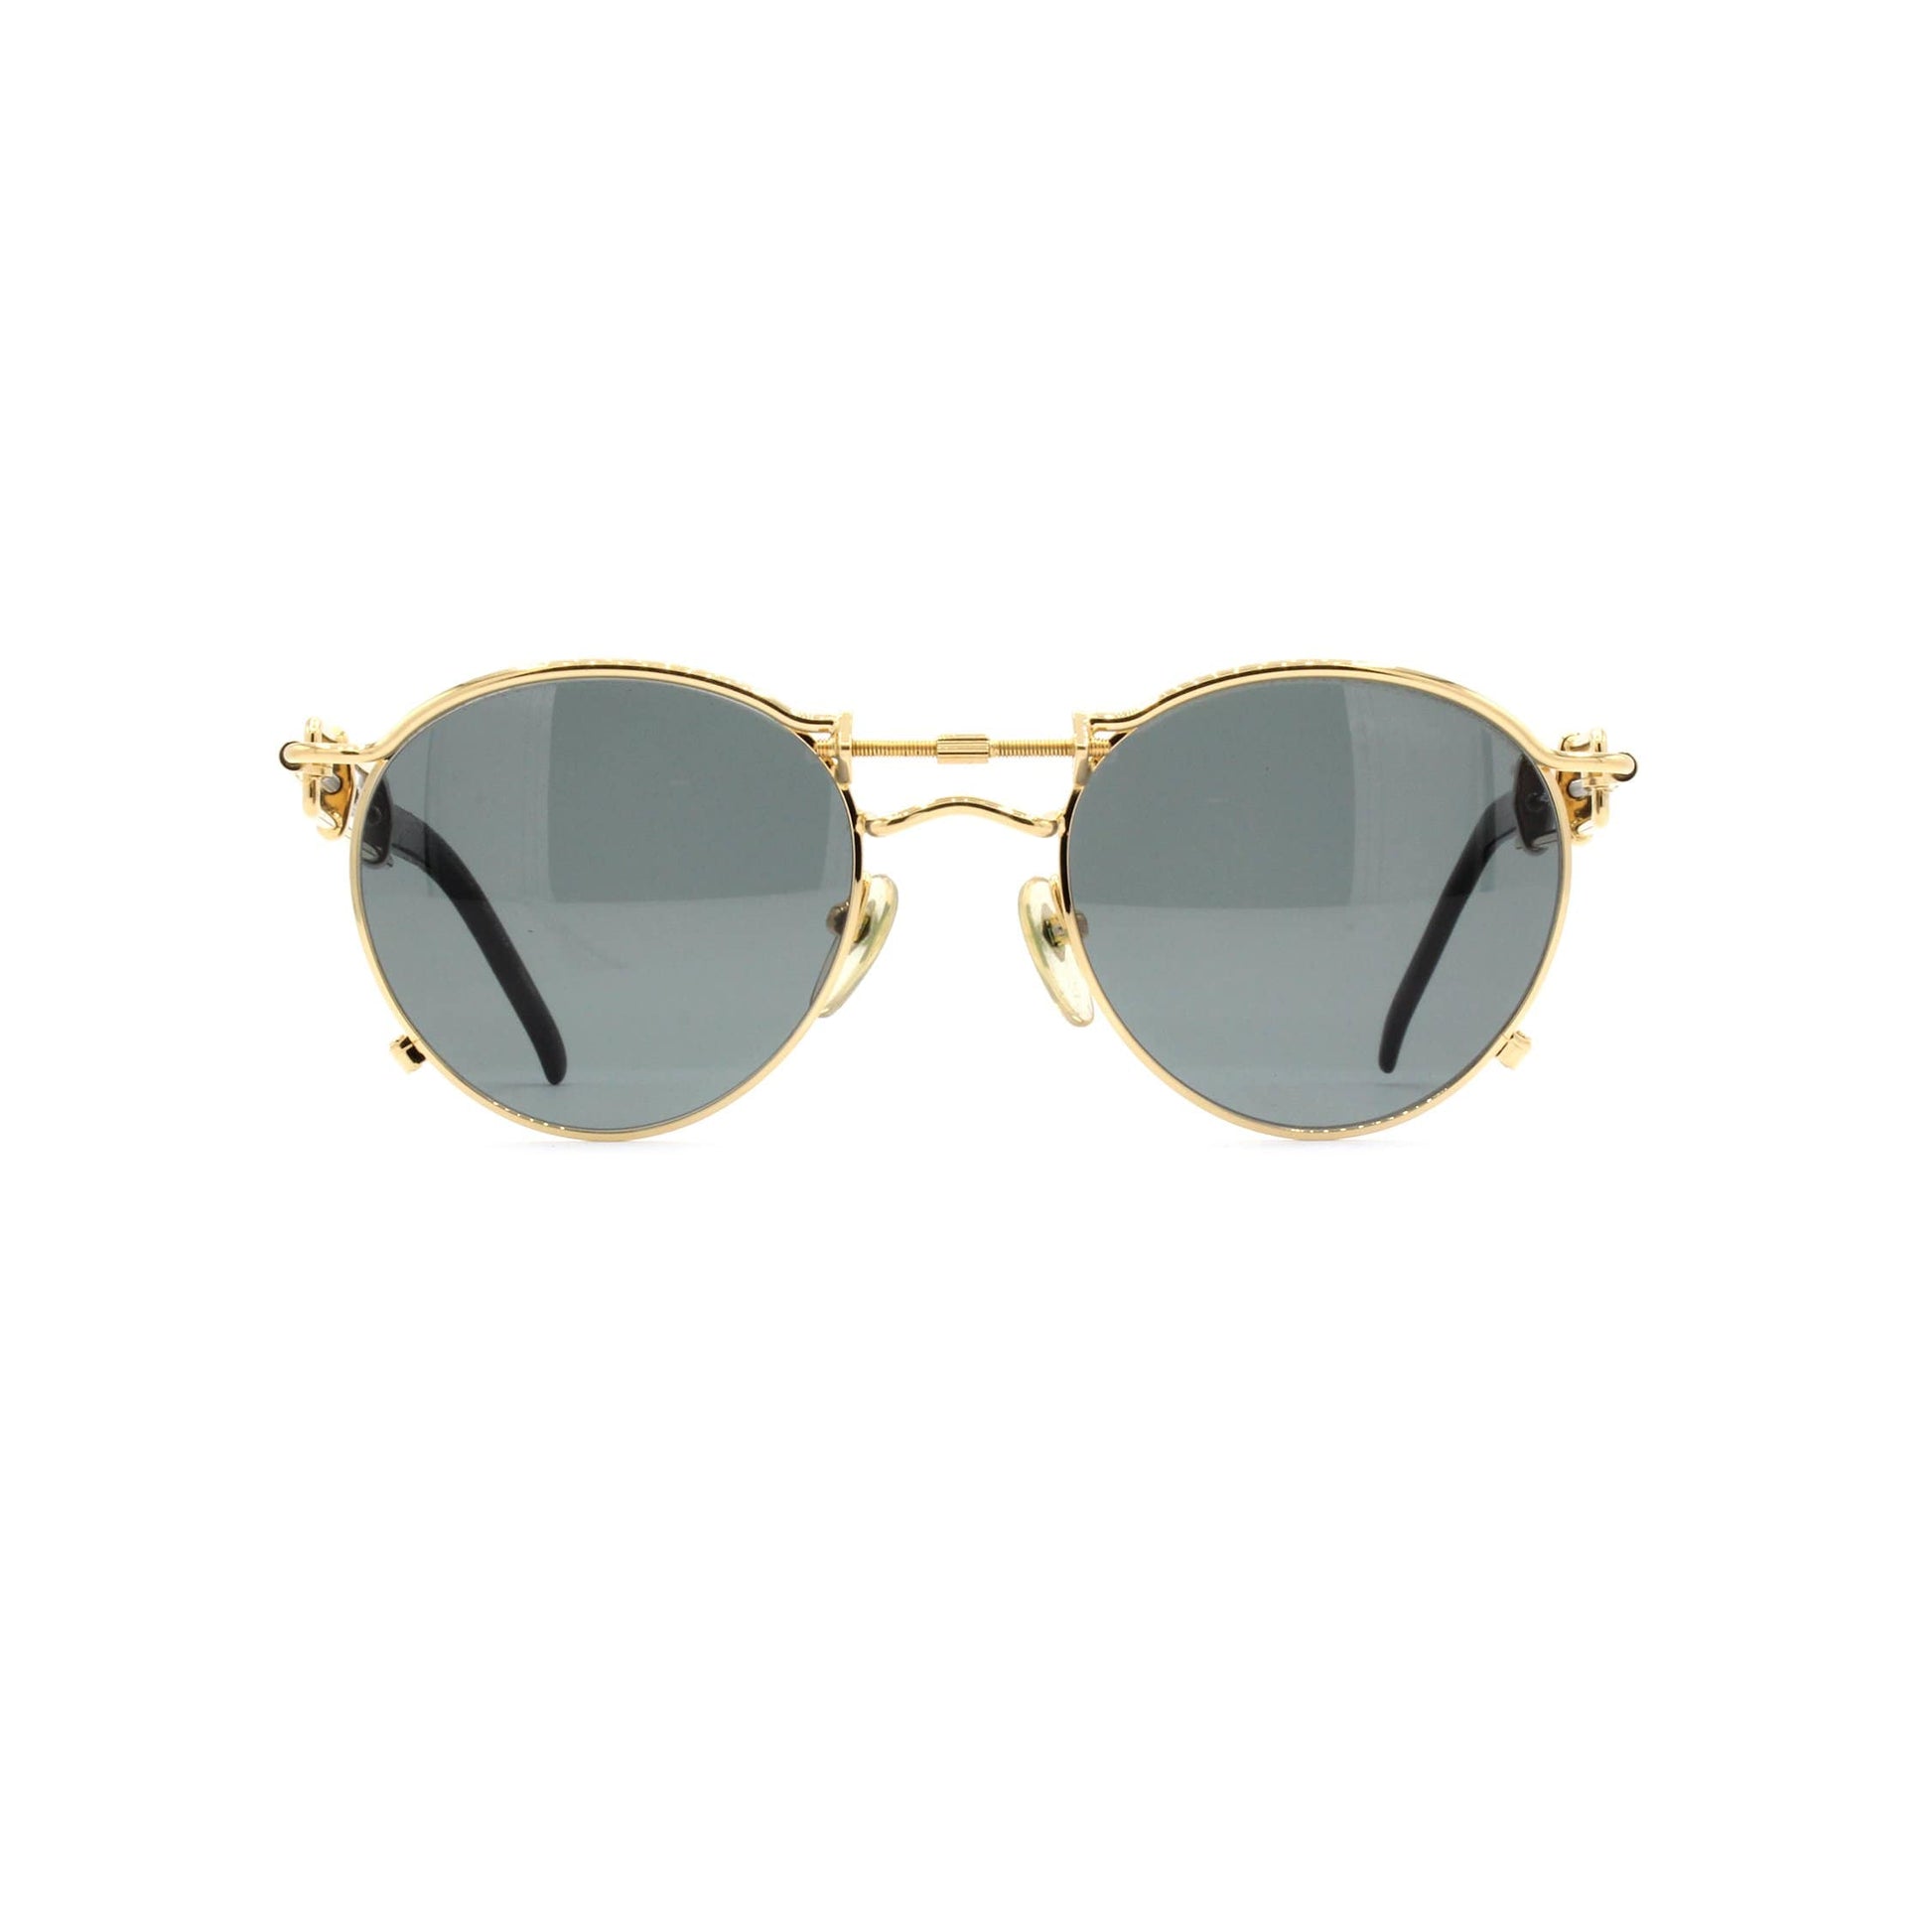 Gold Vintage Jean Paul Gaultier 56-0174 Sunglasses RSTKD Vintage